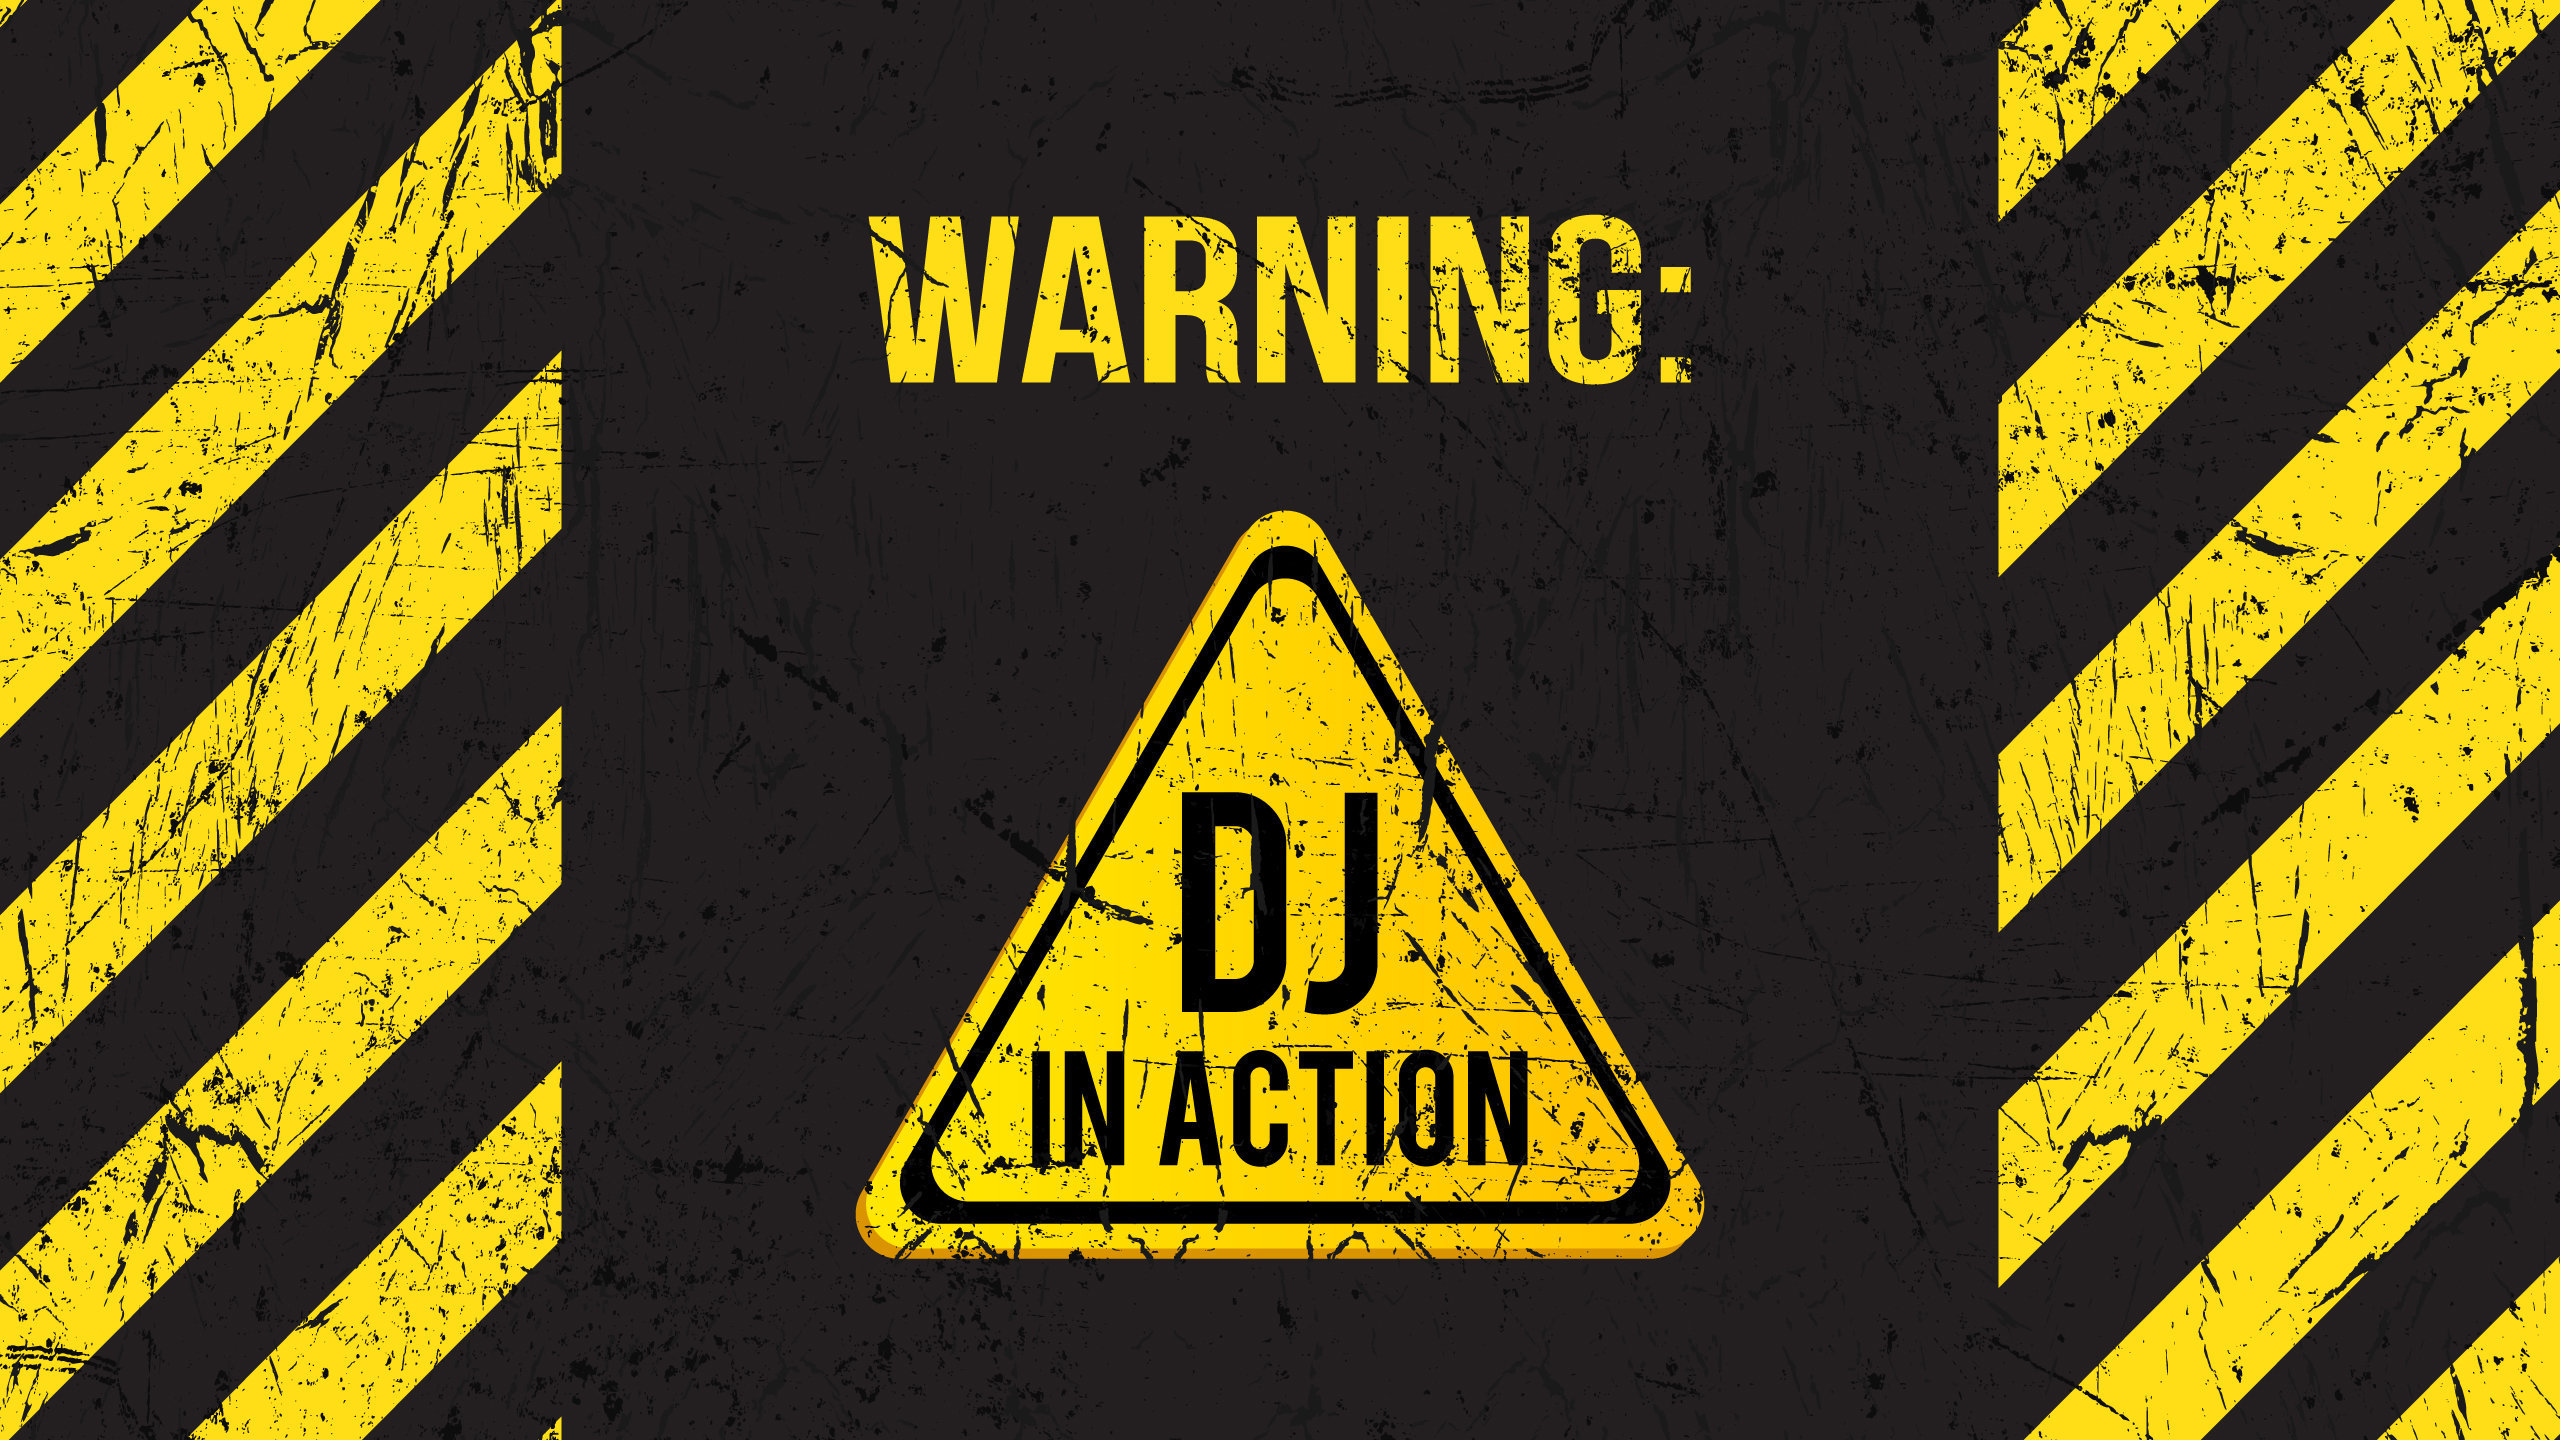 Warning Dj In Action Wallpaper - Warning Dj In Action - HD Wallpaper 